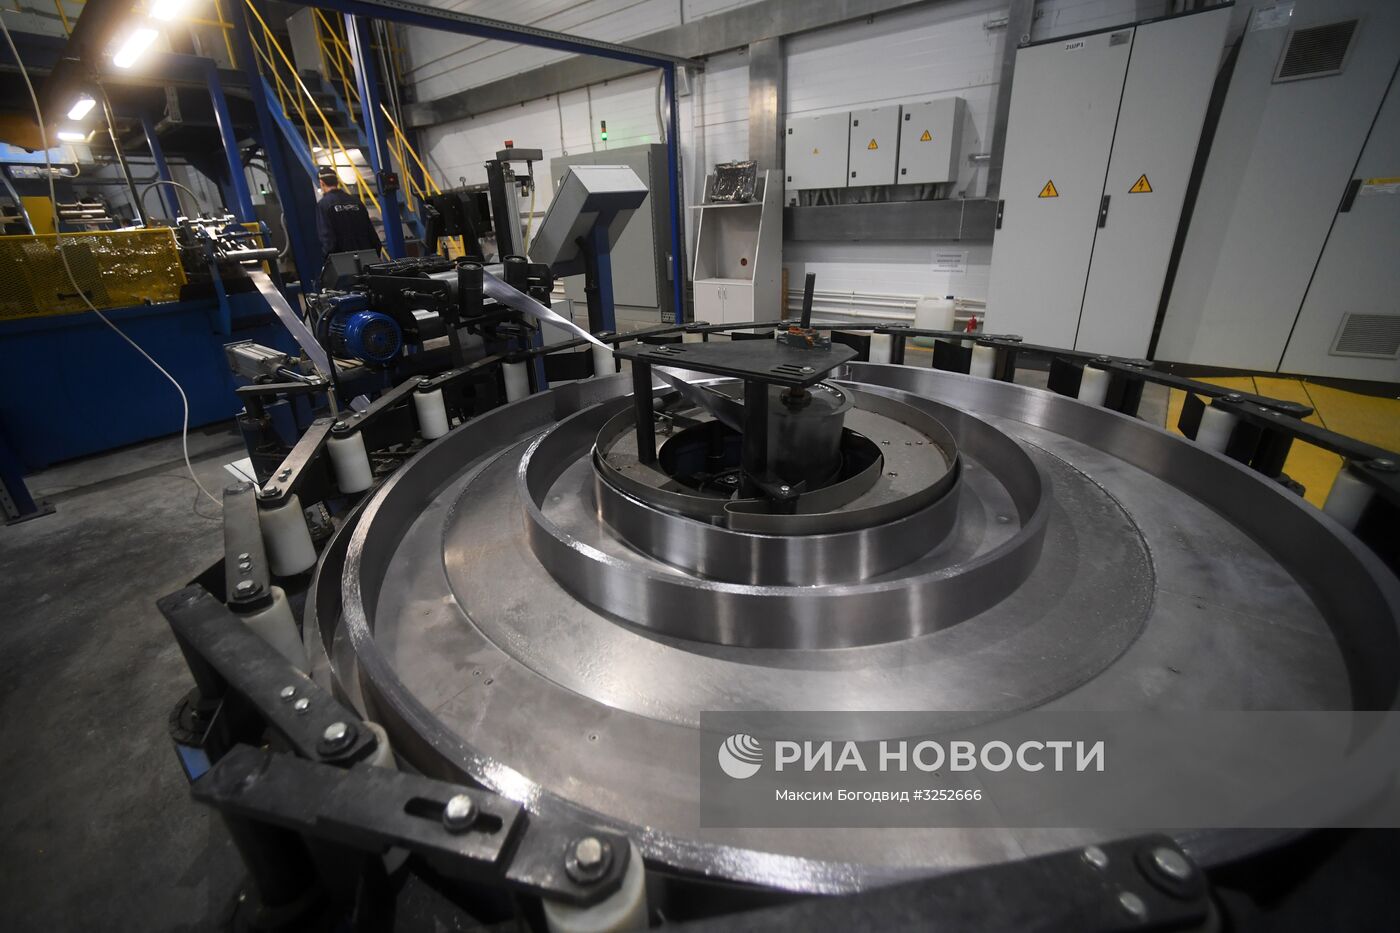 Открытие завода компании Bars Technology в Татарстане